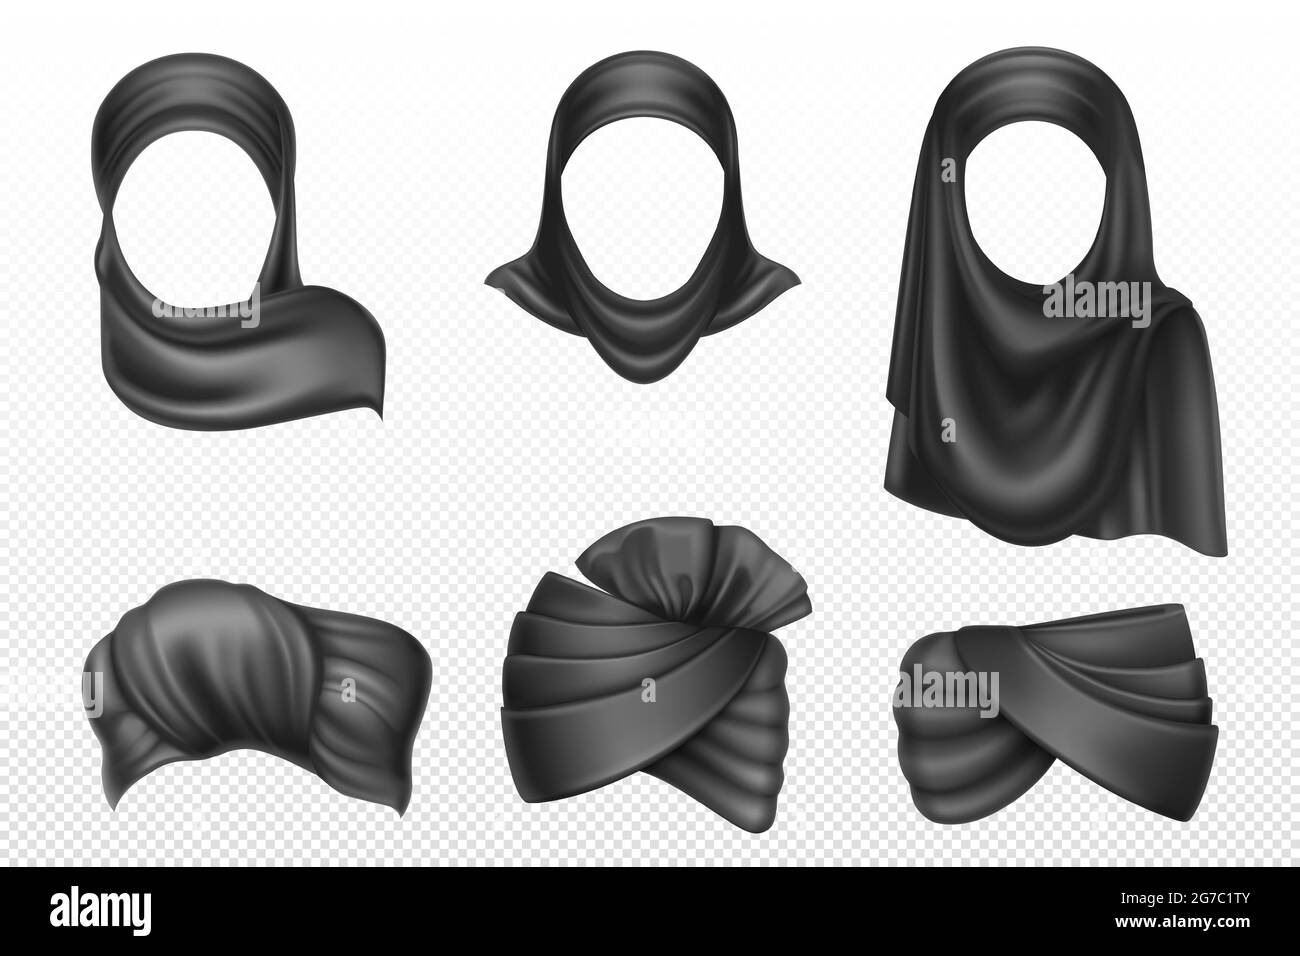 Turbans noirs et hijabs, adresse indienne et arabe pour l'homme et la femme. Ensemble vectoriel réaliste de foulards tortueux, vêtements traditionnels musulmans et islamiques, païd isolé sur fond blanc Illustration de Vecteur